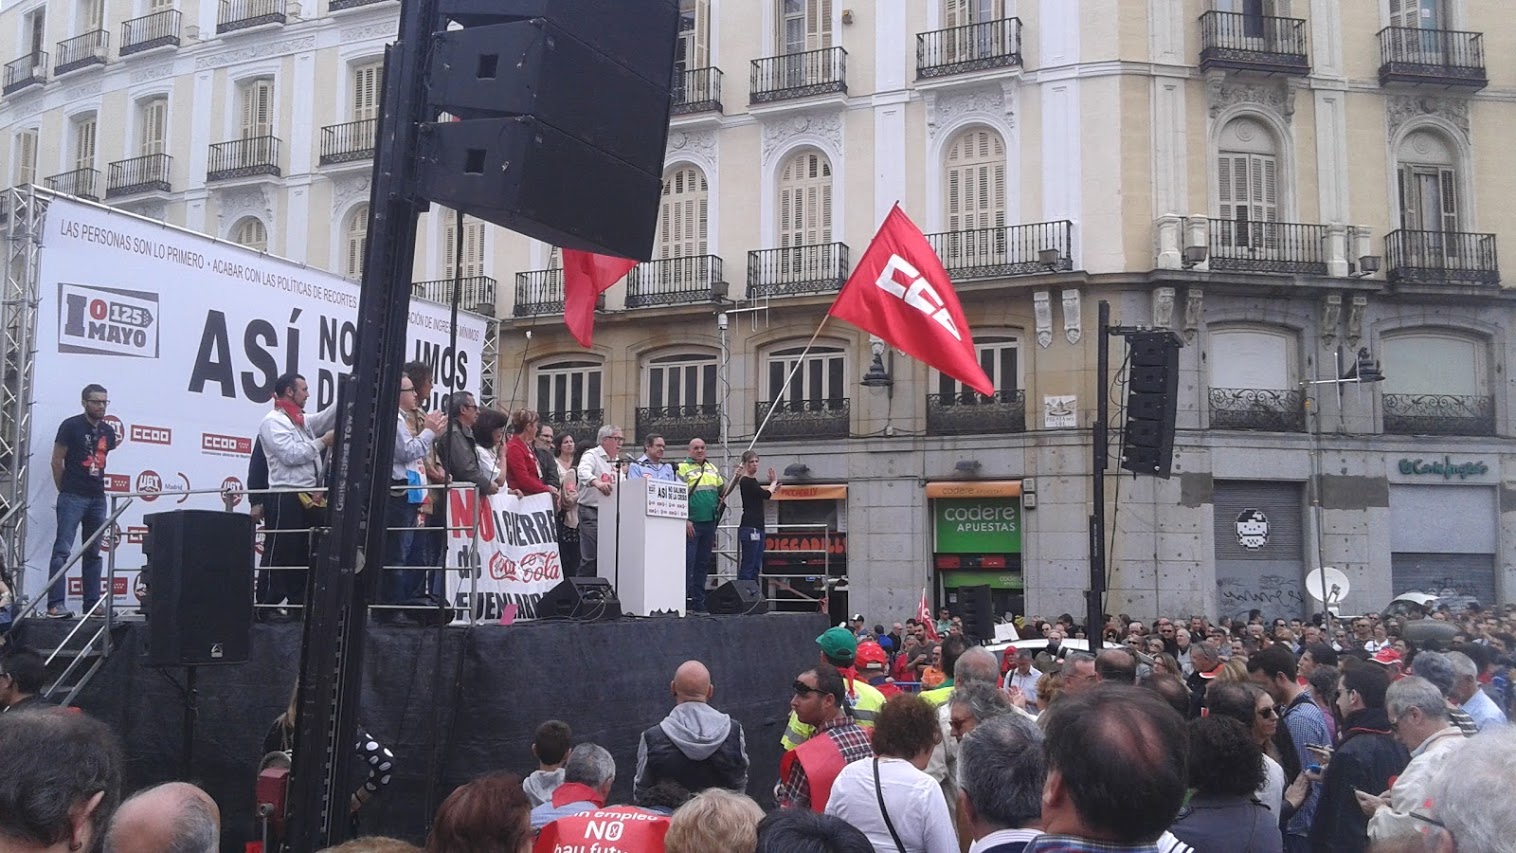 El secretario general de CCOO, Ignacio Fernández Toxo, interviene al término de la manifestación. / Fotos: Miguel Muñoz